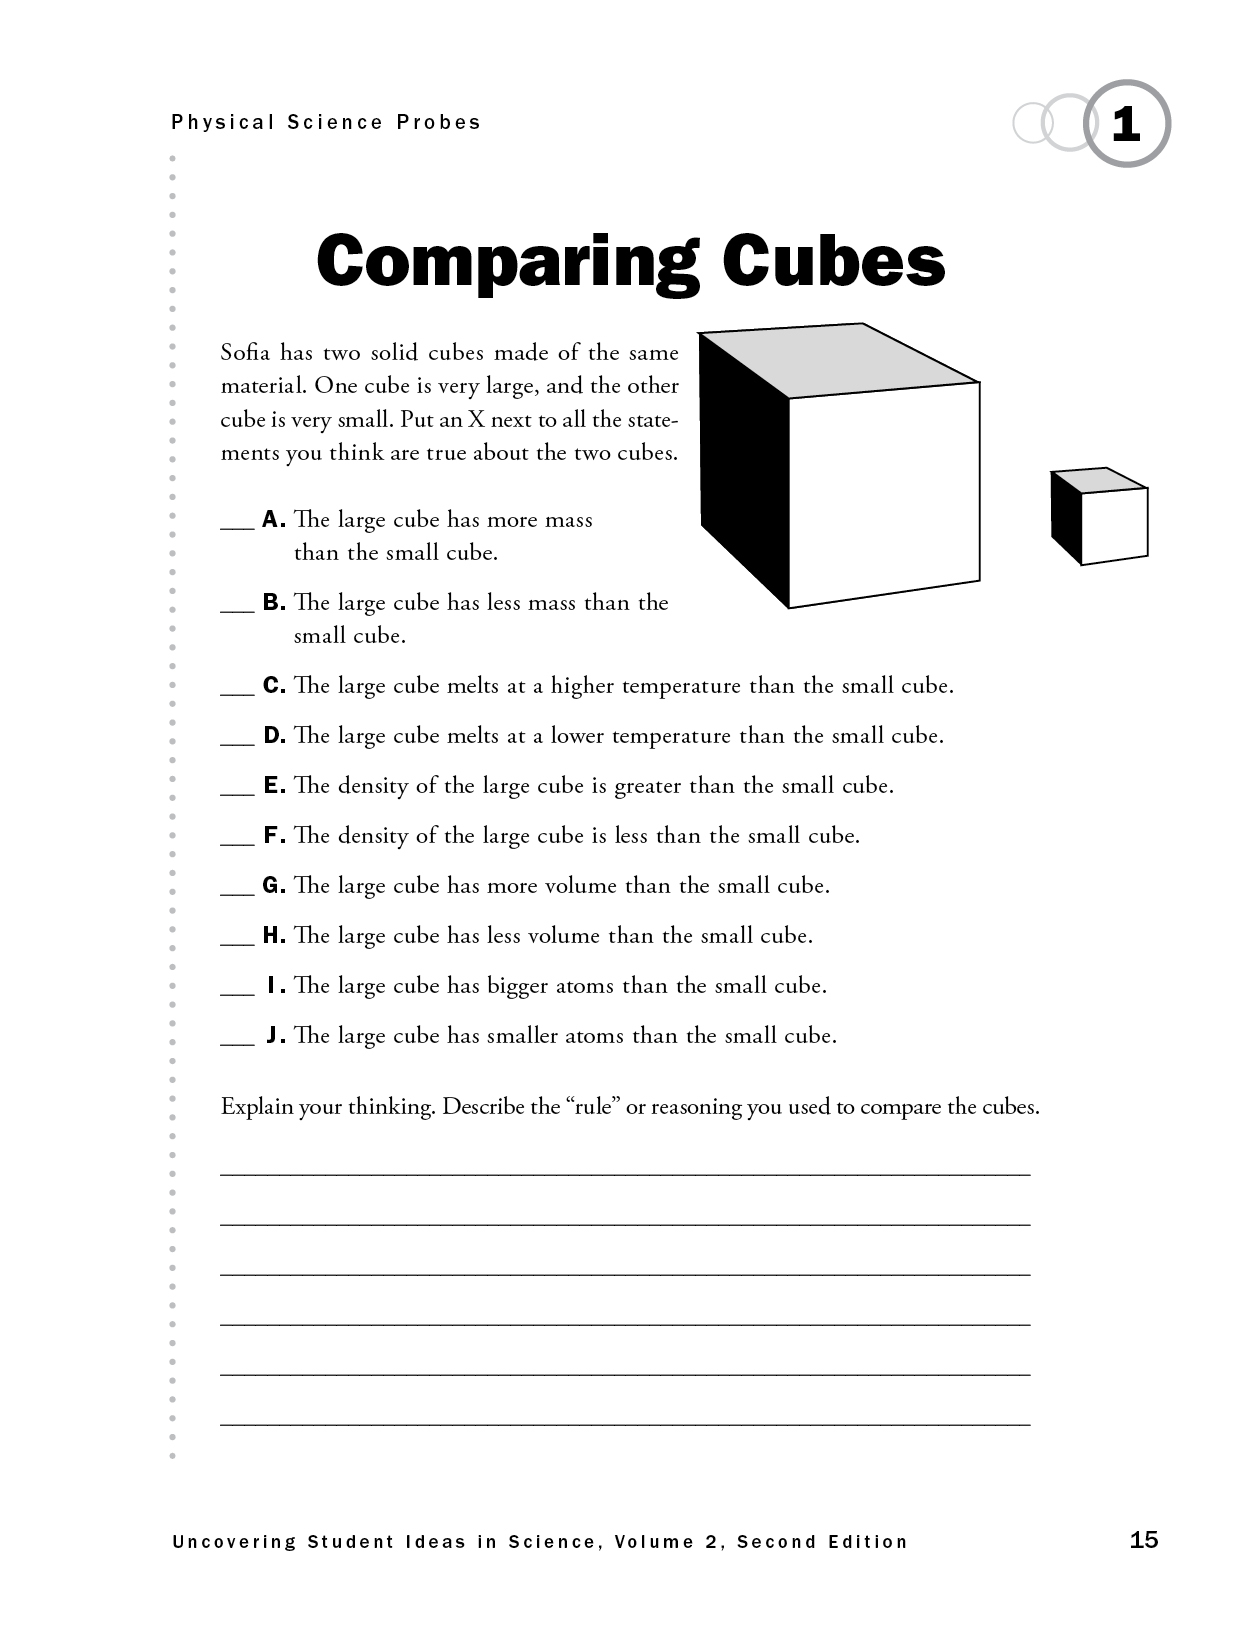 Comparing Cubes